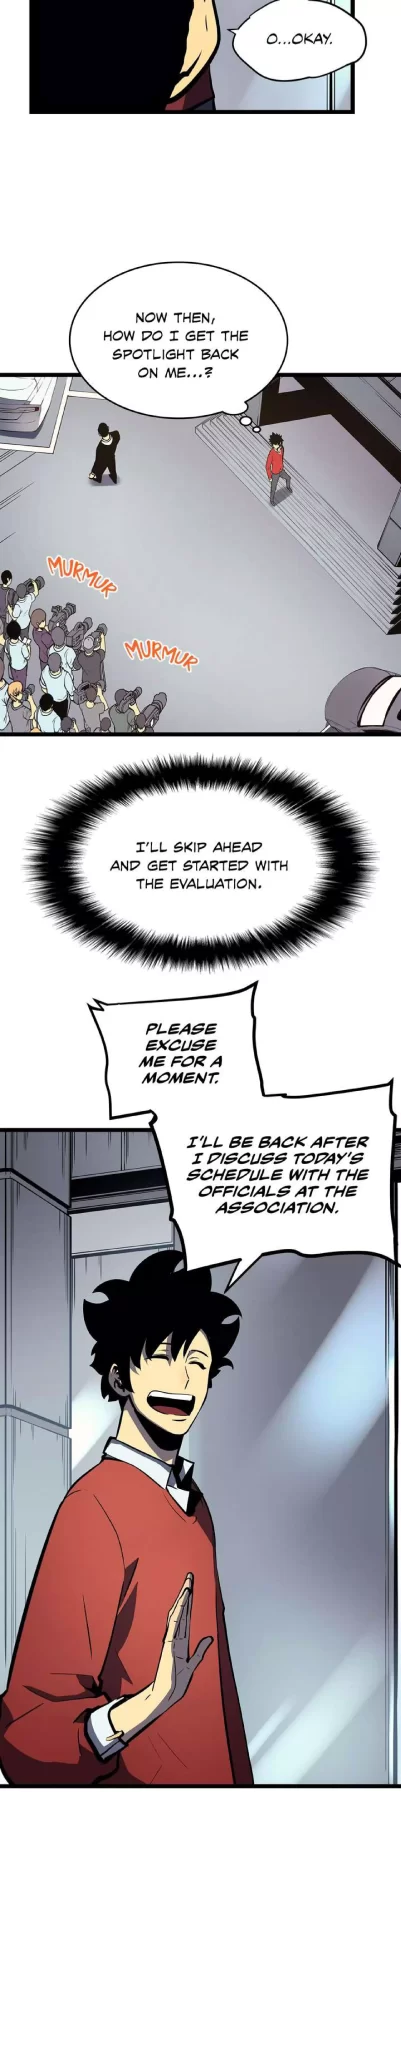 Solo Leveling Manga Manga Chapter - 77 - image 6